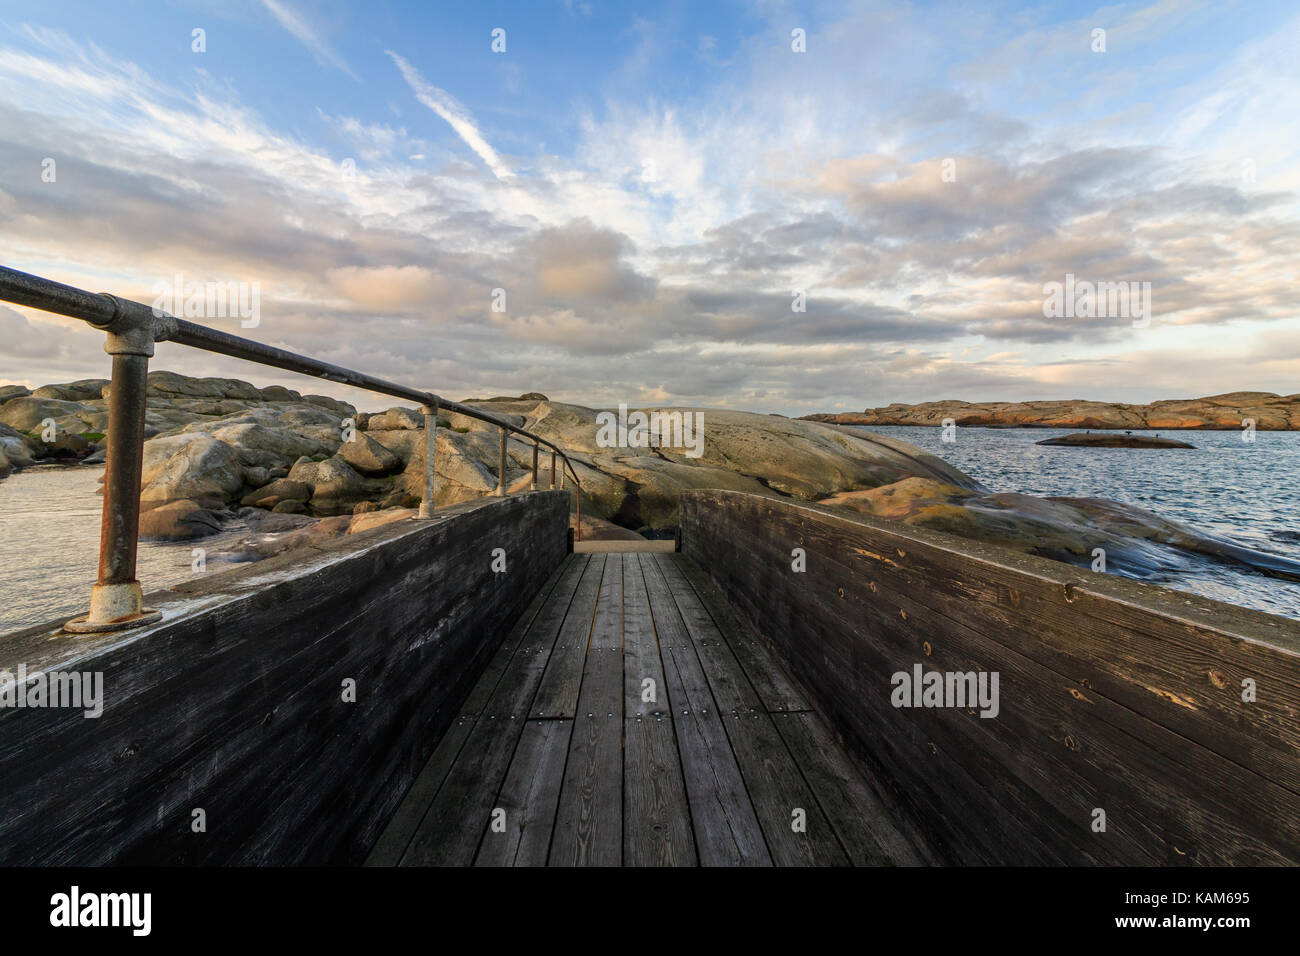 Puente de madera en el paisaje del mar con nubes y cielo por encima, Verdens ende Vestfold, Noruega Foto de stock